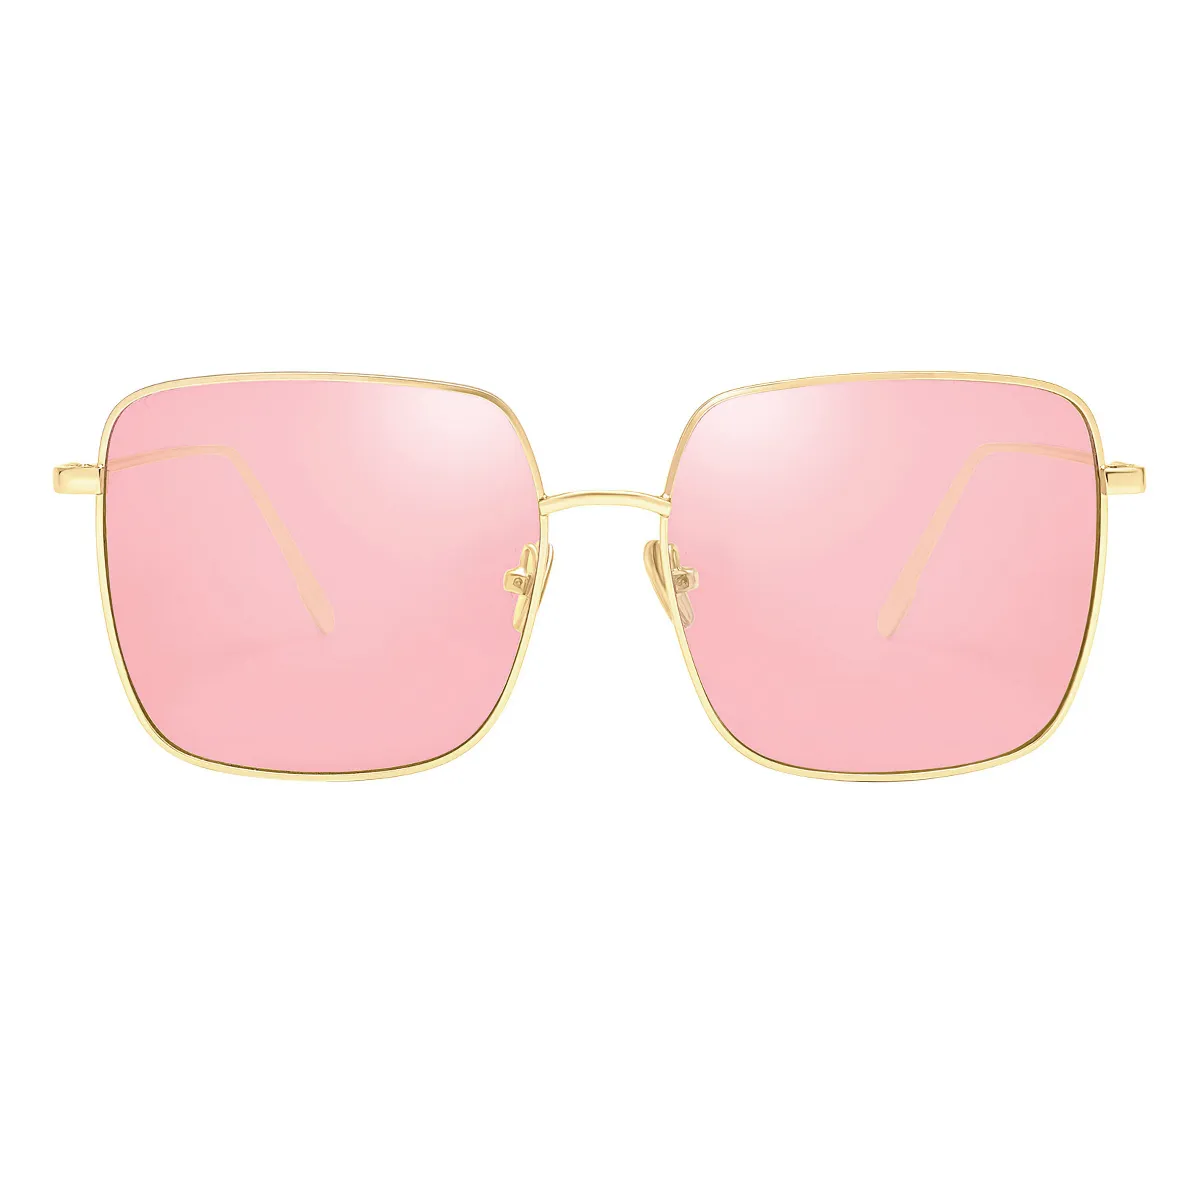 Fashion Square Gold  Sunglasses for Women & Men